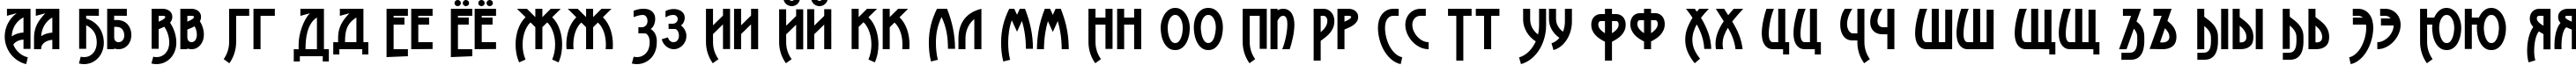 Пример написания русского алфавита шрифтом Advokat Modern